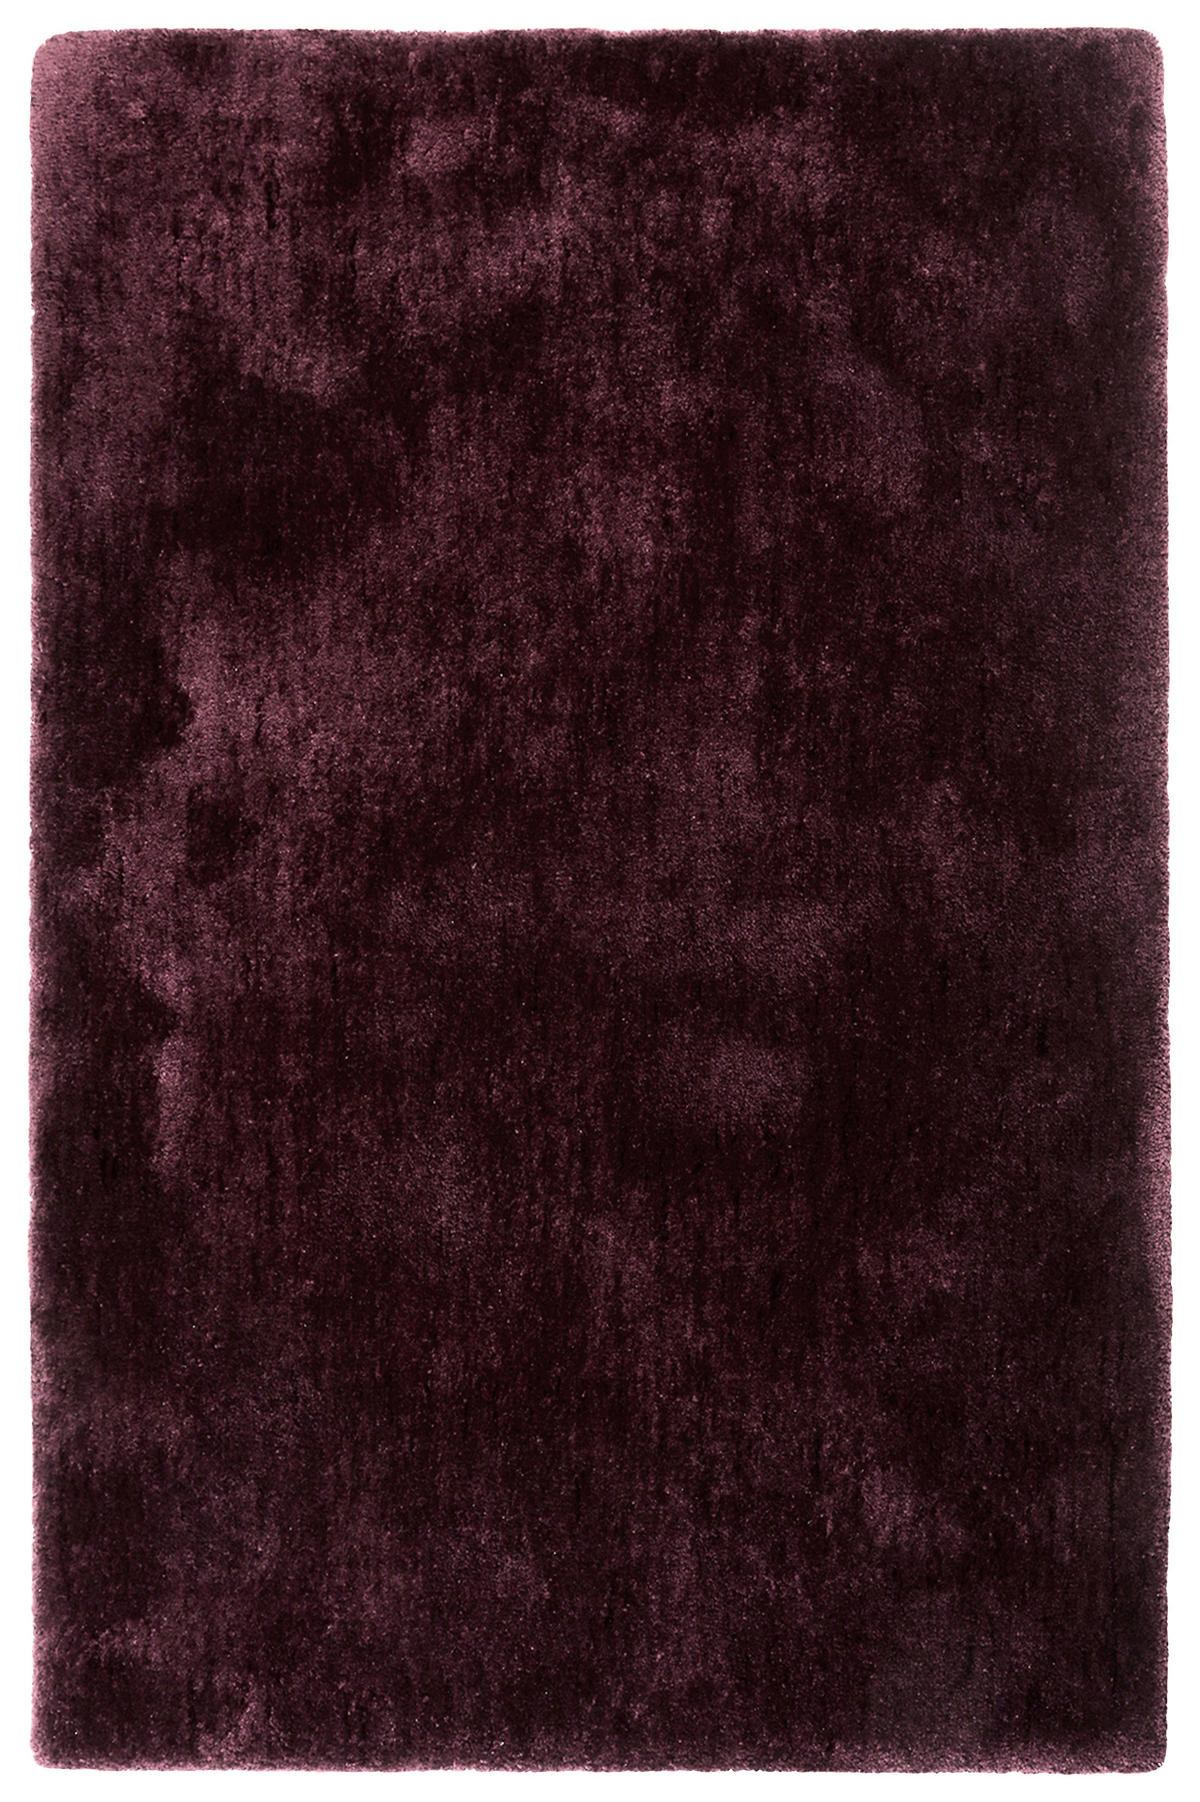 HOCHFLORTEPPICH 80/150 cm Relaxx  - Bordeaux, Basics, Textil (80/150cm) - Esprit